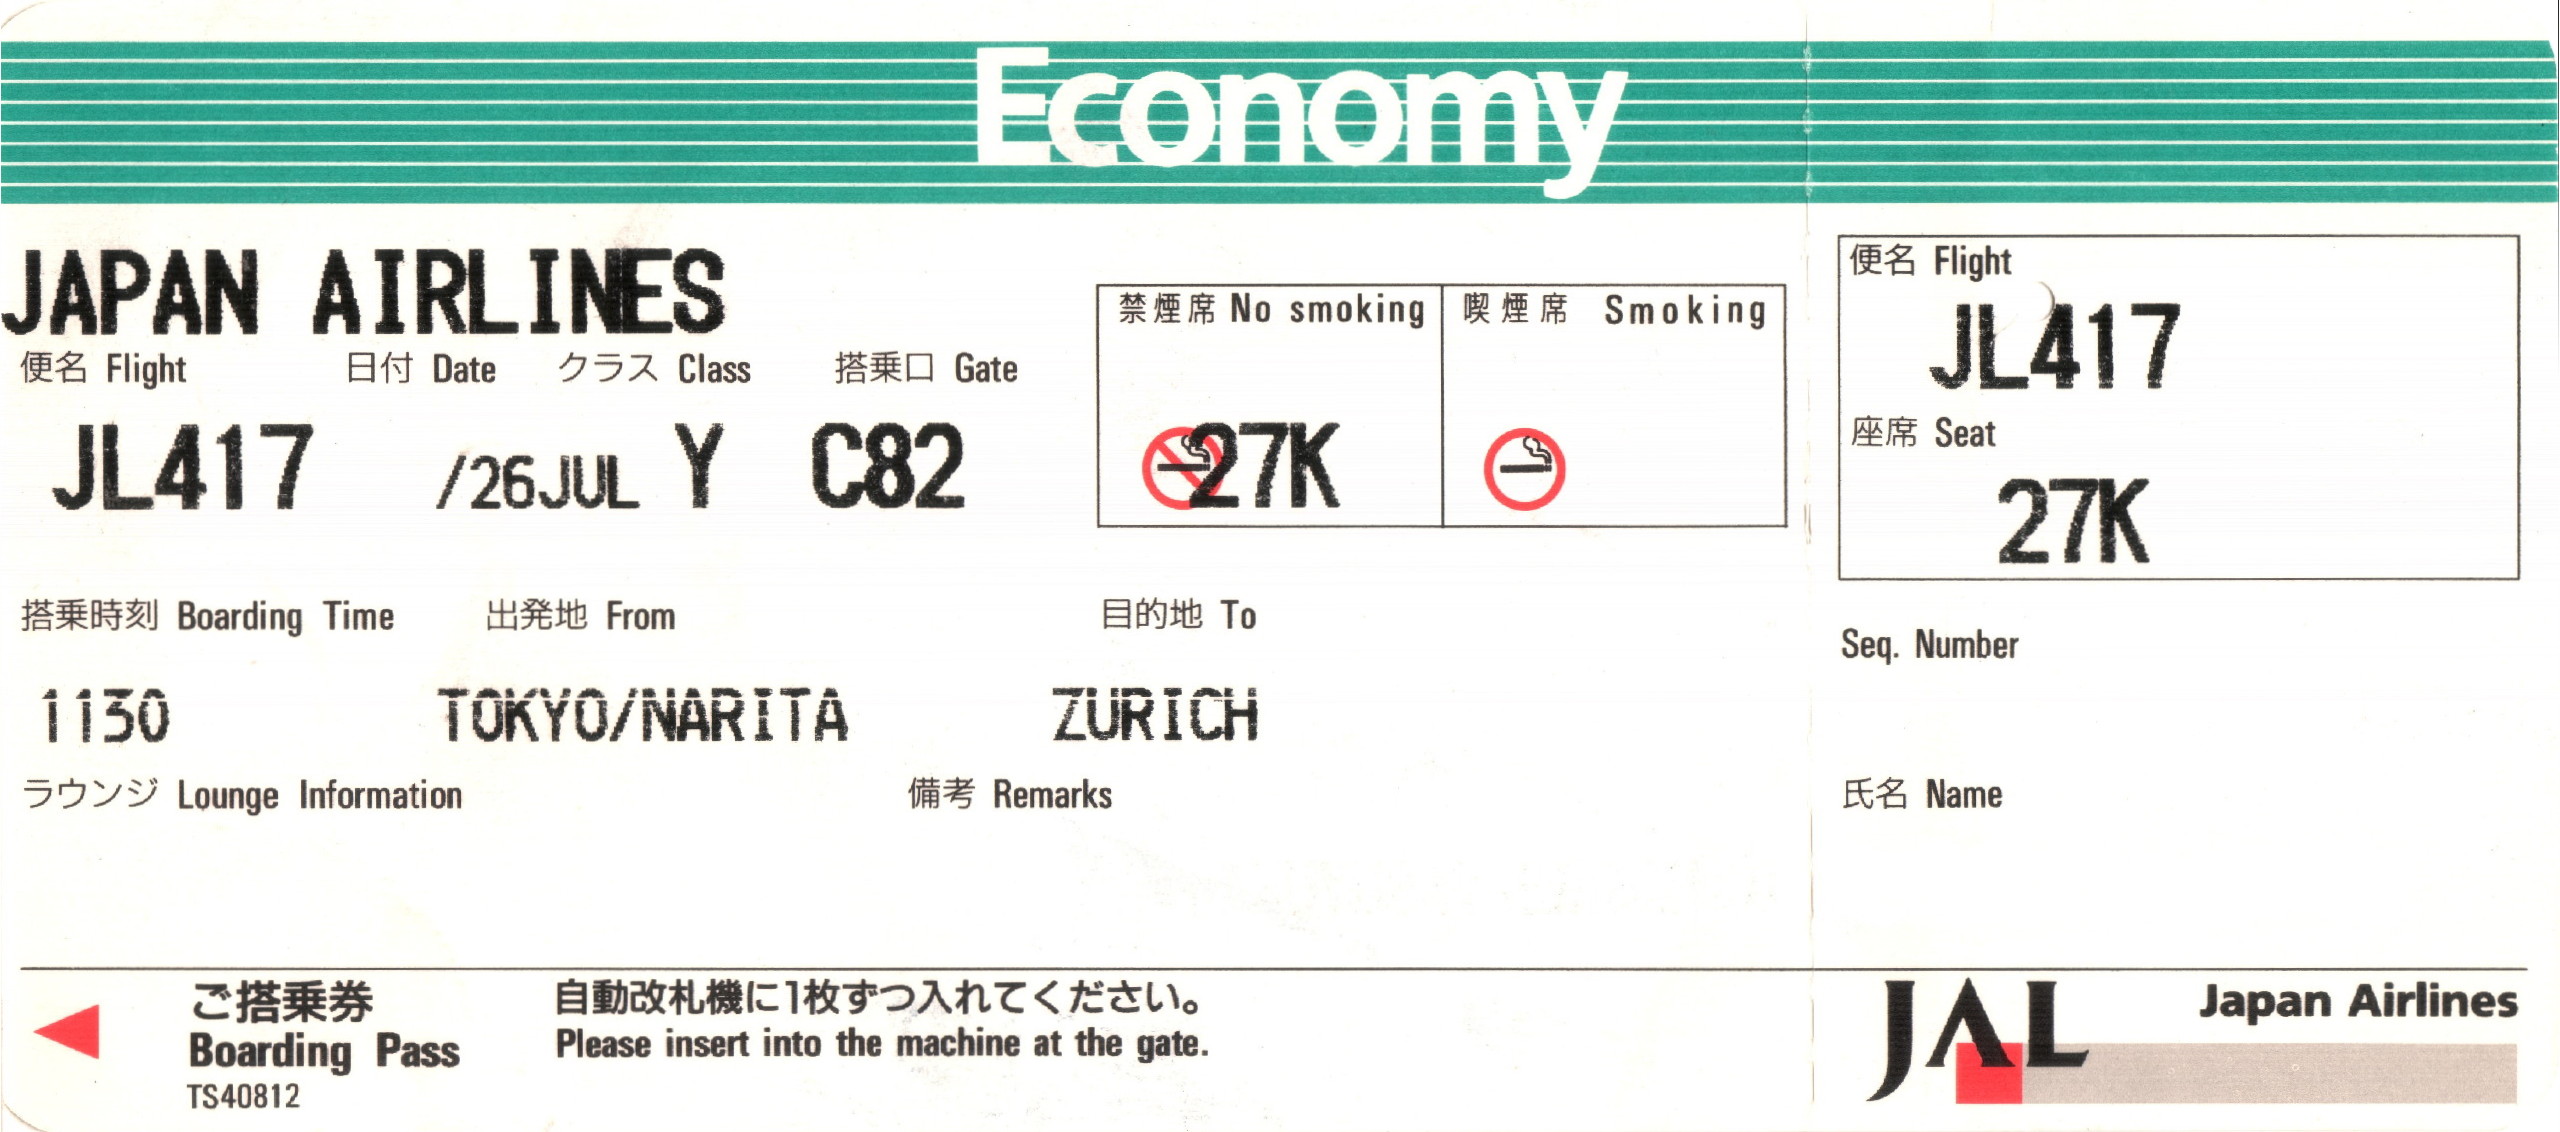 билет на самолет в японию стоимость